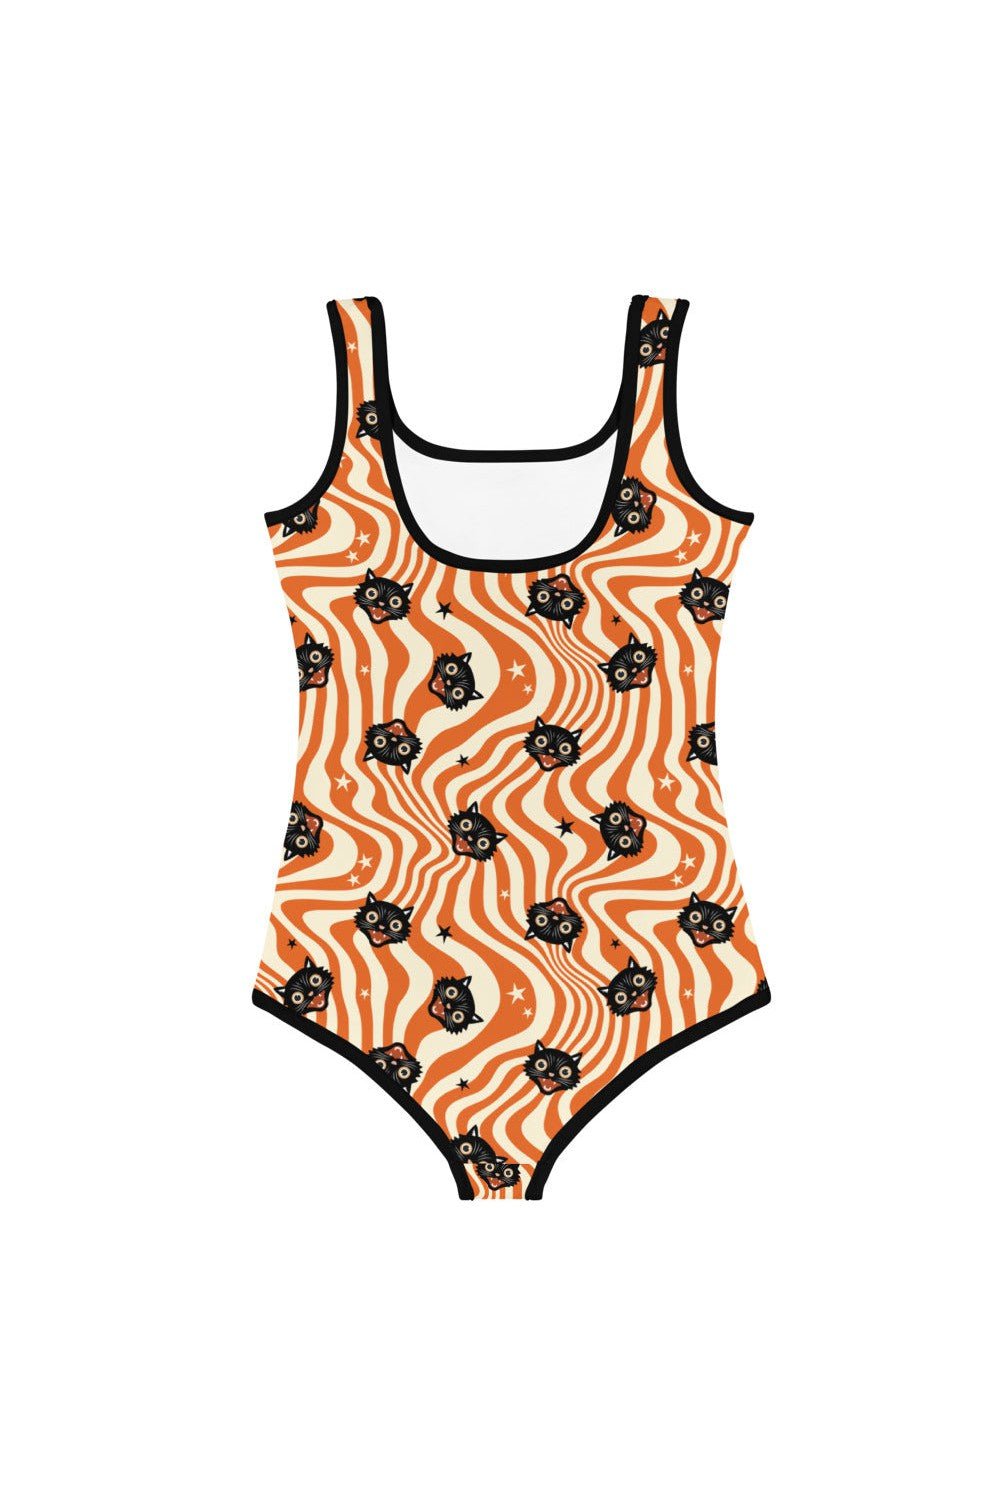 Vintage Halloween Cat Kids Swimsuit/Leotard - Mack & Harvie